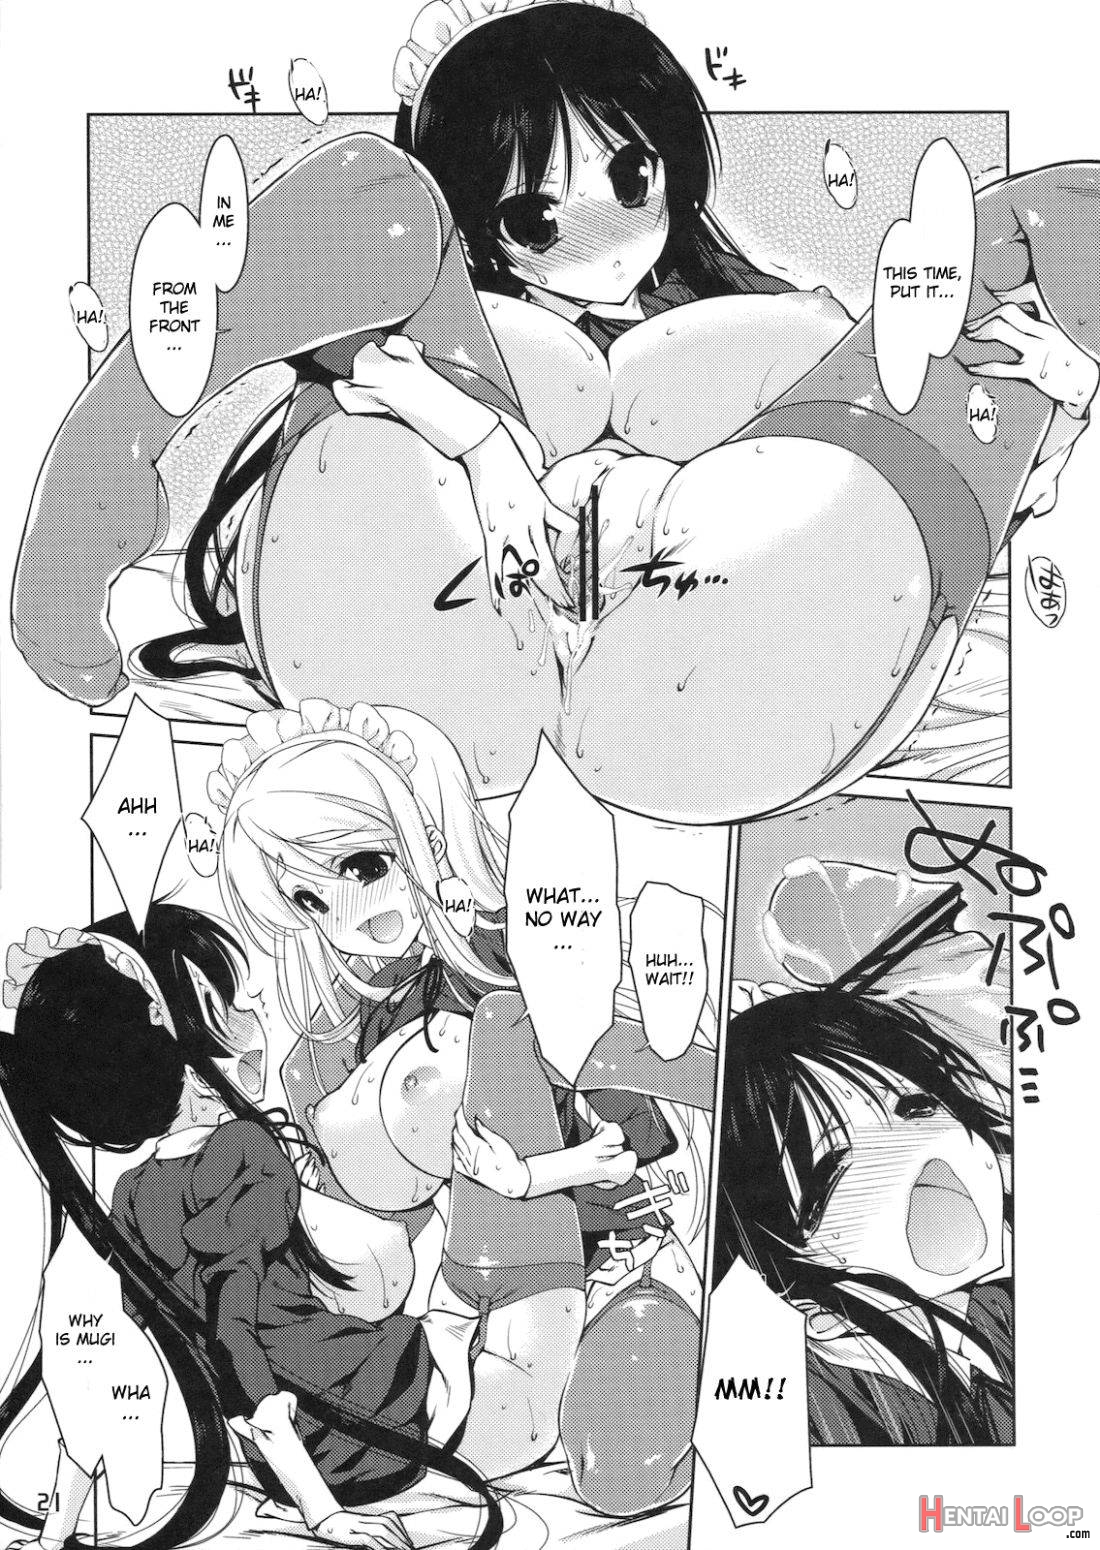 Mio-tan! 6 Mugi-chan to page 17